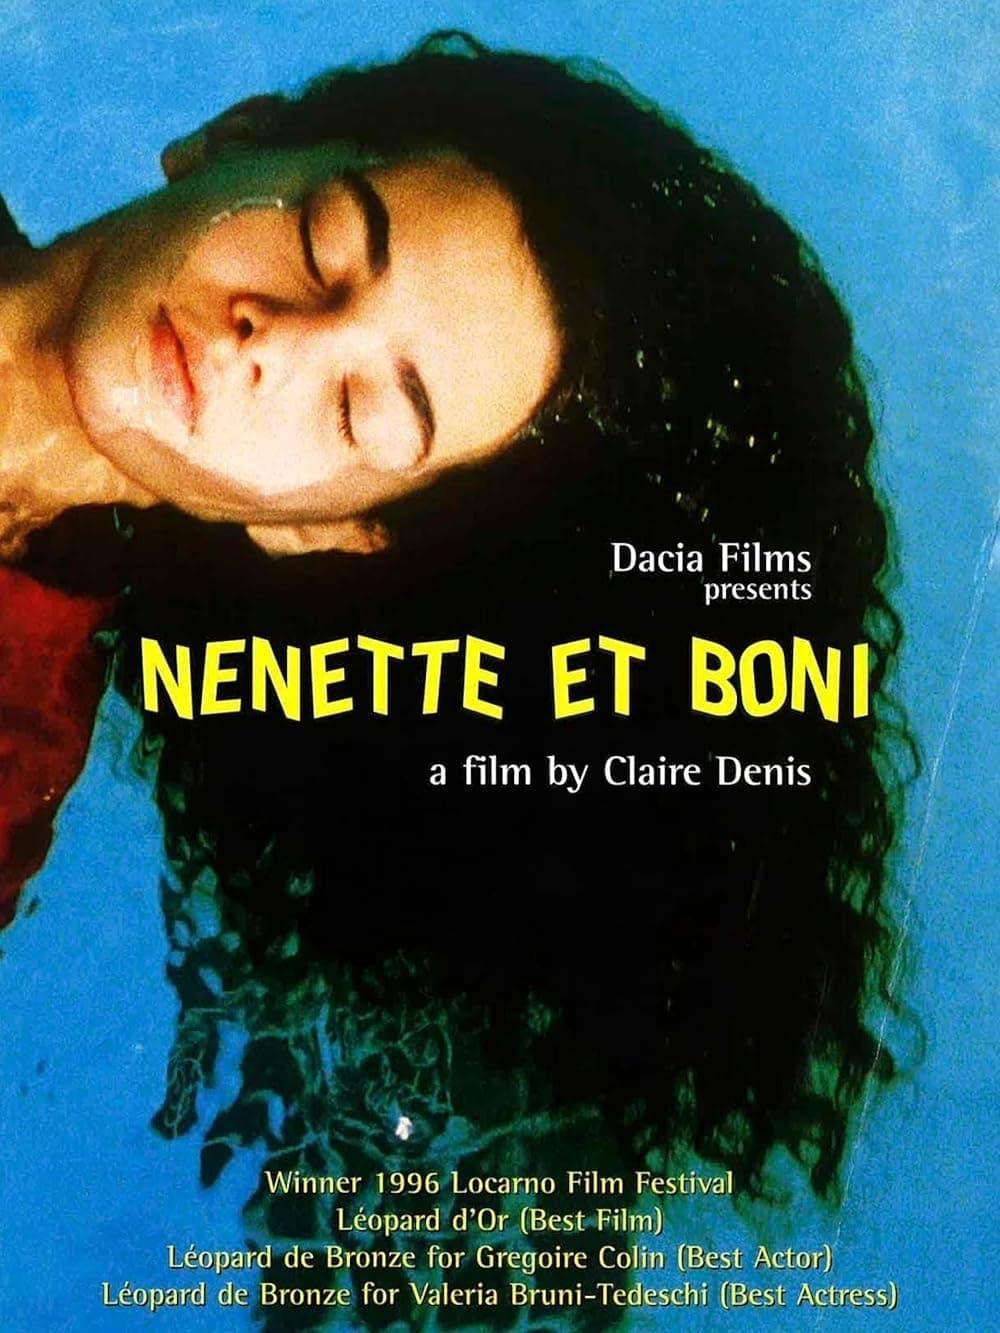 Nenette and Boni poster